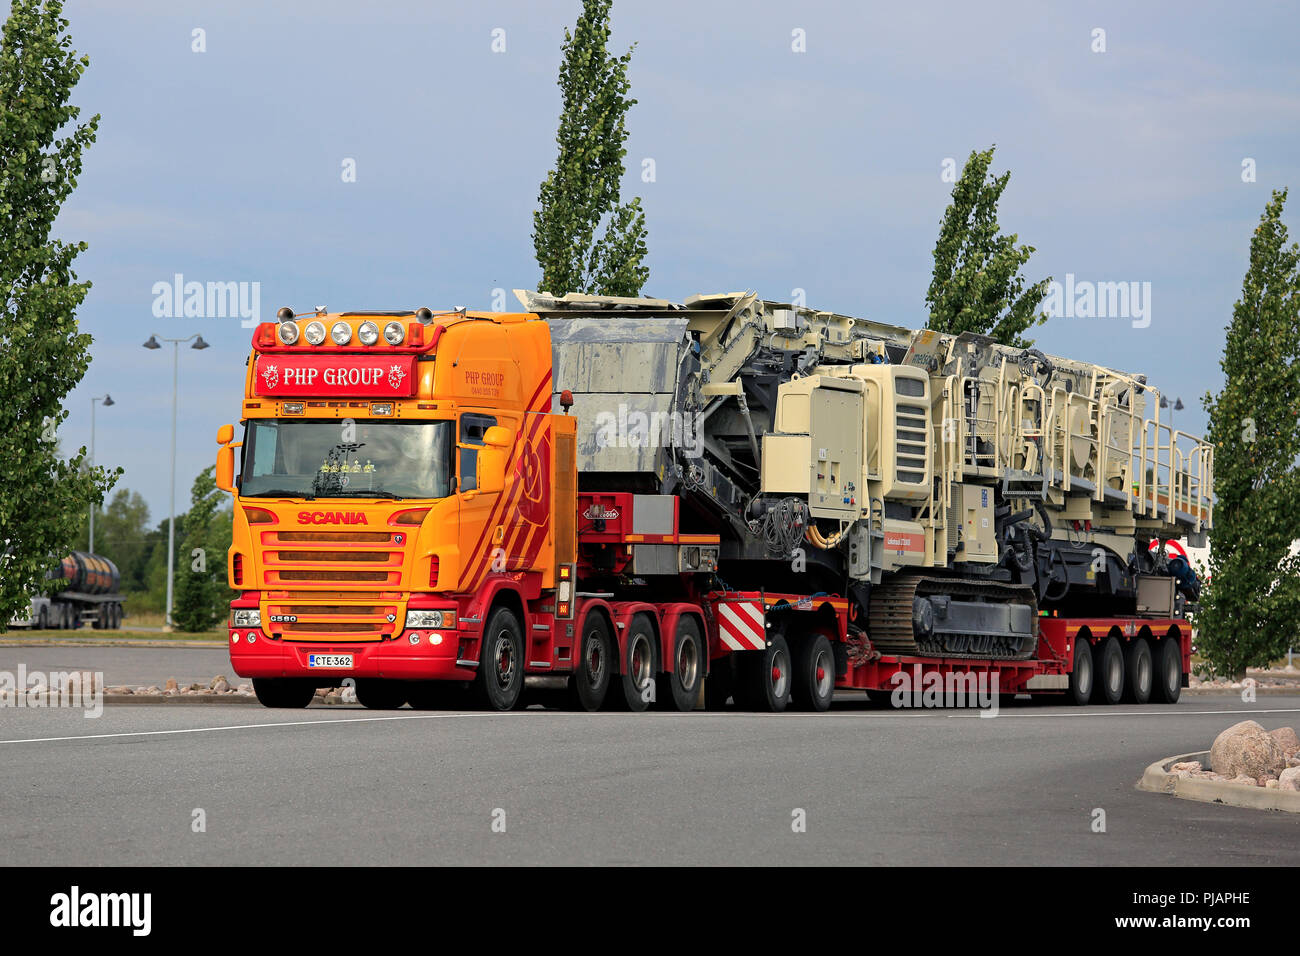 Scania G 580 Lkw der PHP Group Oy hols Lokotrack LT330 D mobile Brech- und Siebanlagen auf Noteboom Trailer. Mariehamn, Finnland - 9. August 2018. Stockfoto